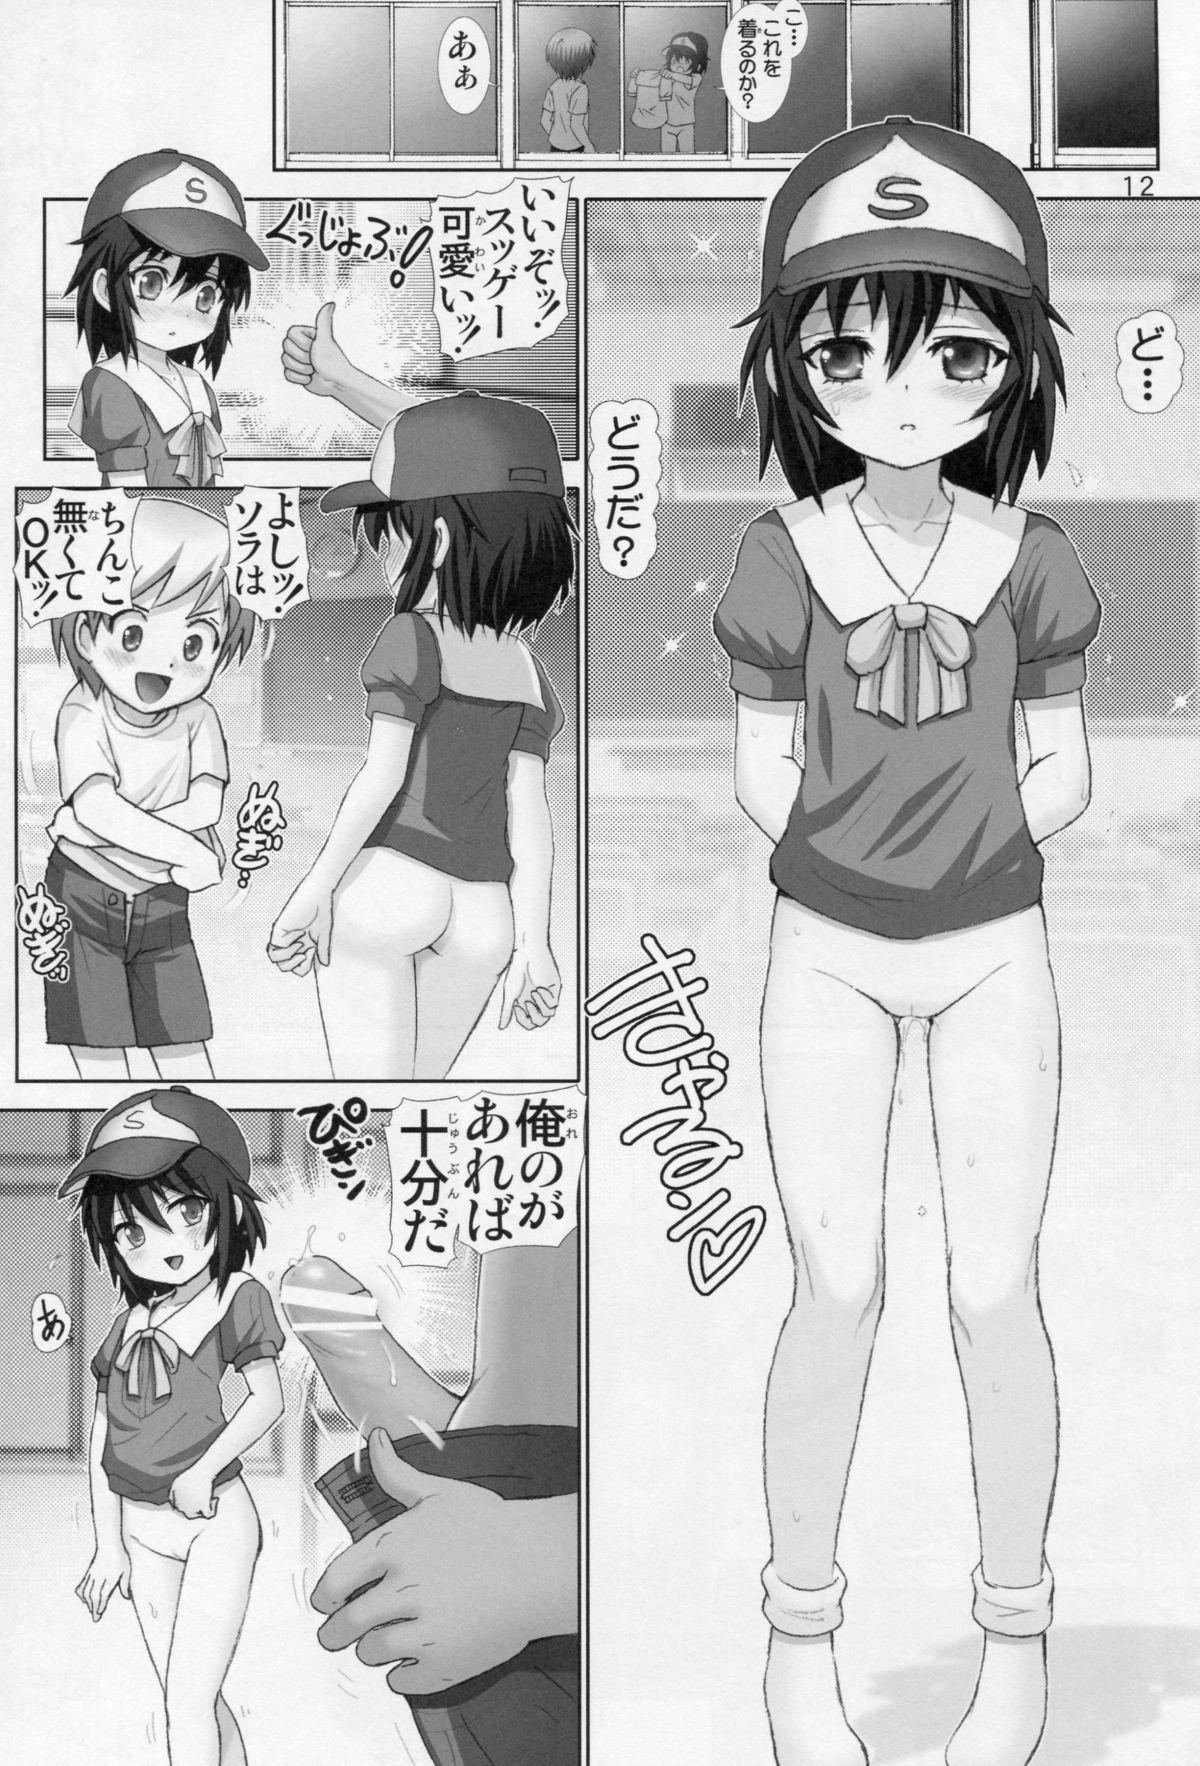 Rub Boku no Tomodachi wa Chin○ ga Nai - Boku wa tomodachi ga sukunai Small Tits Porn - Page 11